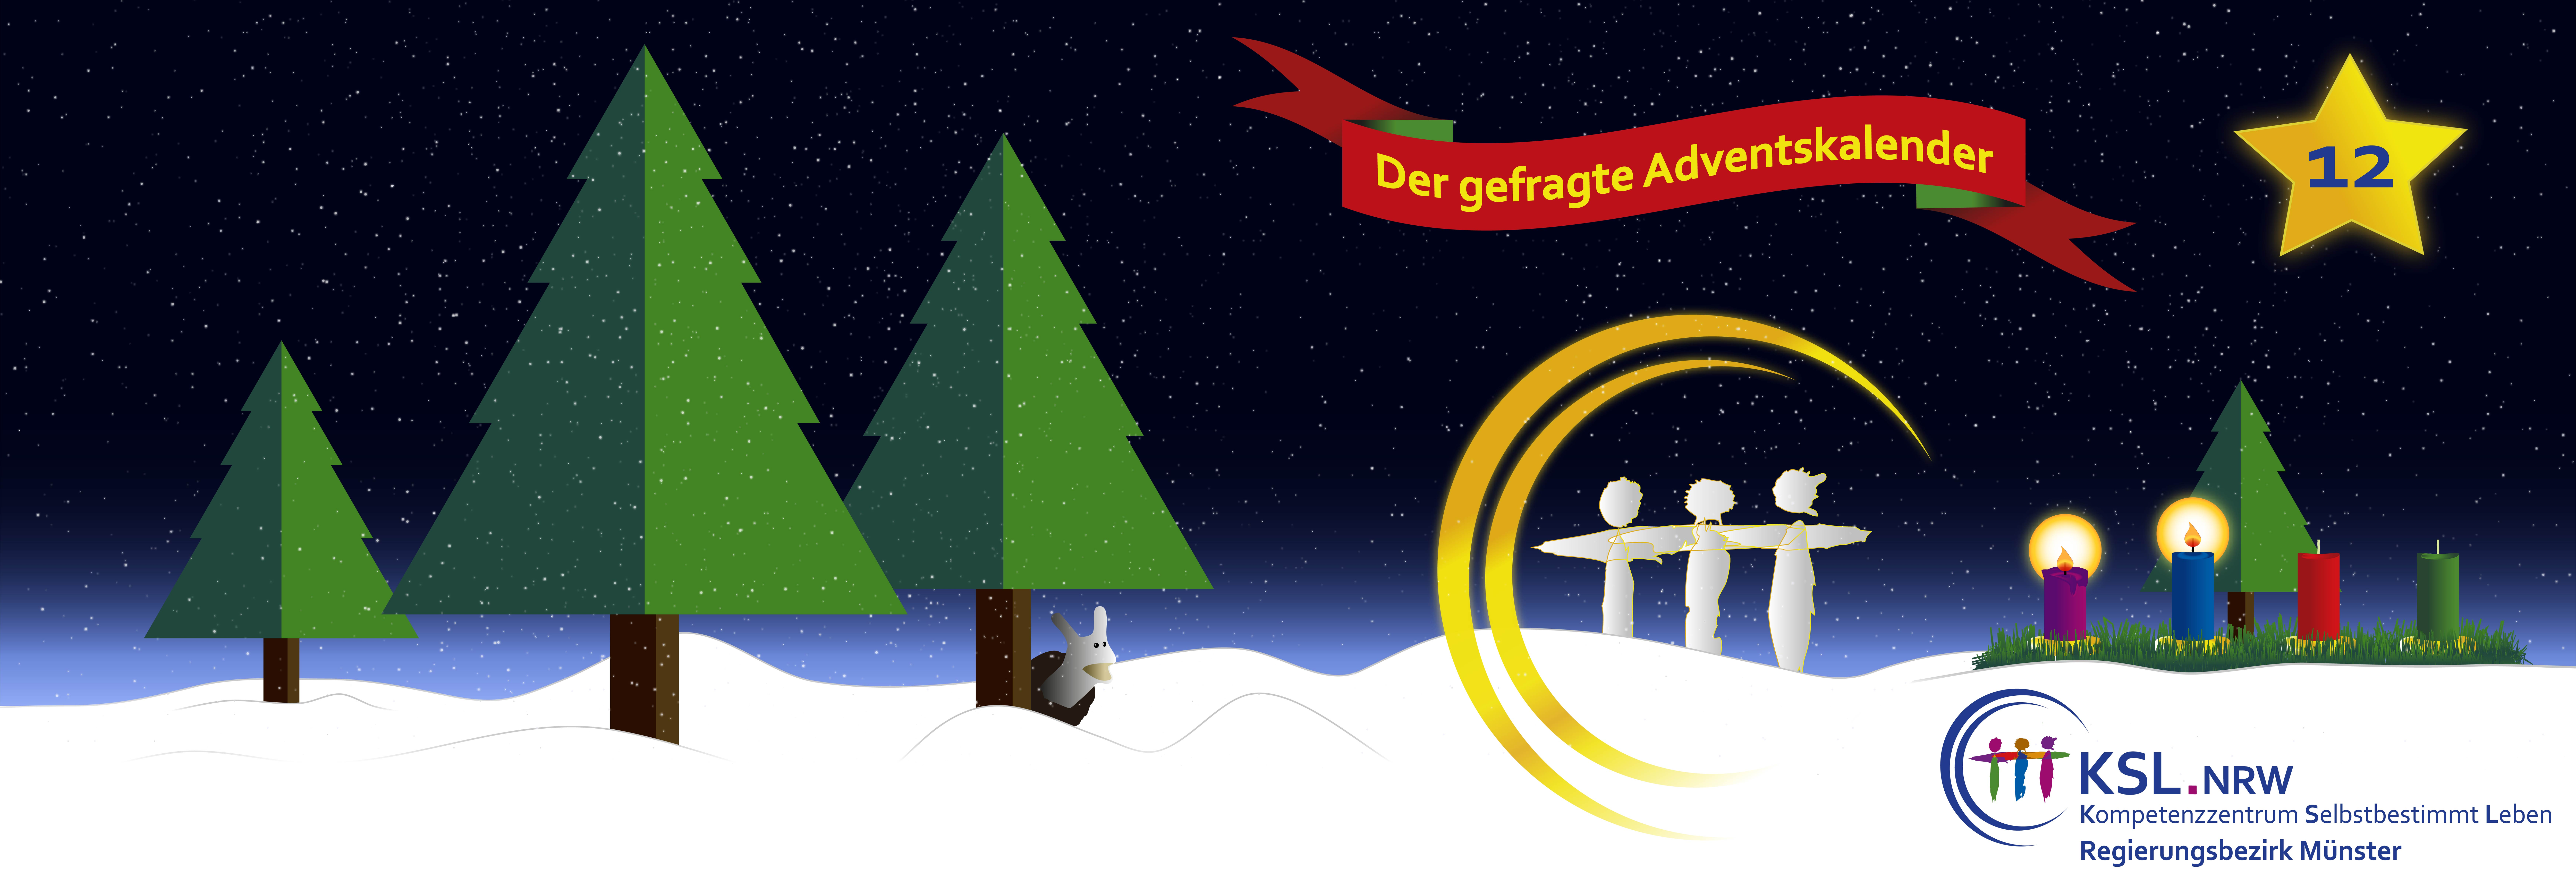 Der gefragte Adventskalender - KSL Münster - weihnachtlicher Hintergrund - vier Tannenbäume - ein Stern mit der Nummer 12 - ein Adventskranz mit vier Kerzen